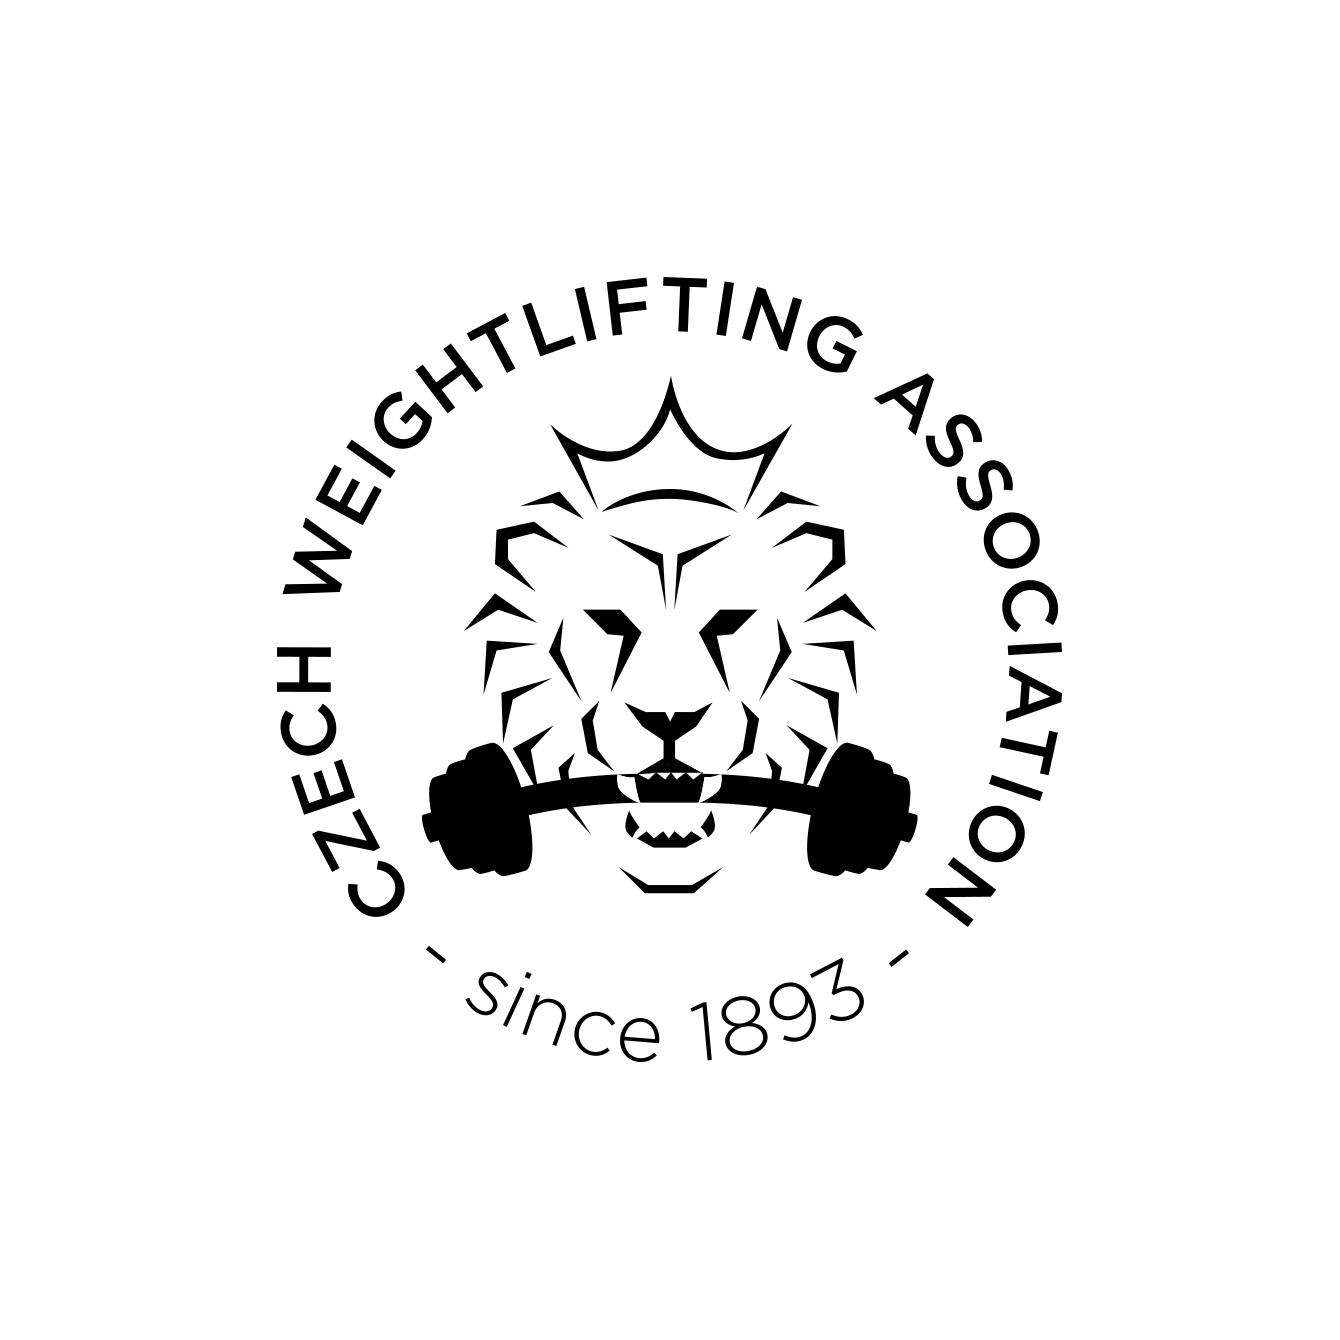 Czech weightlifting association | Webdesign Blog